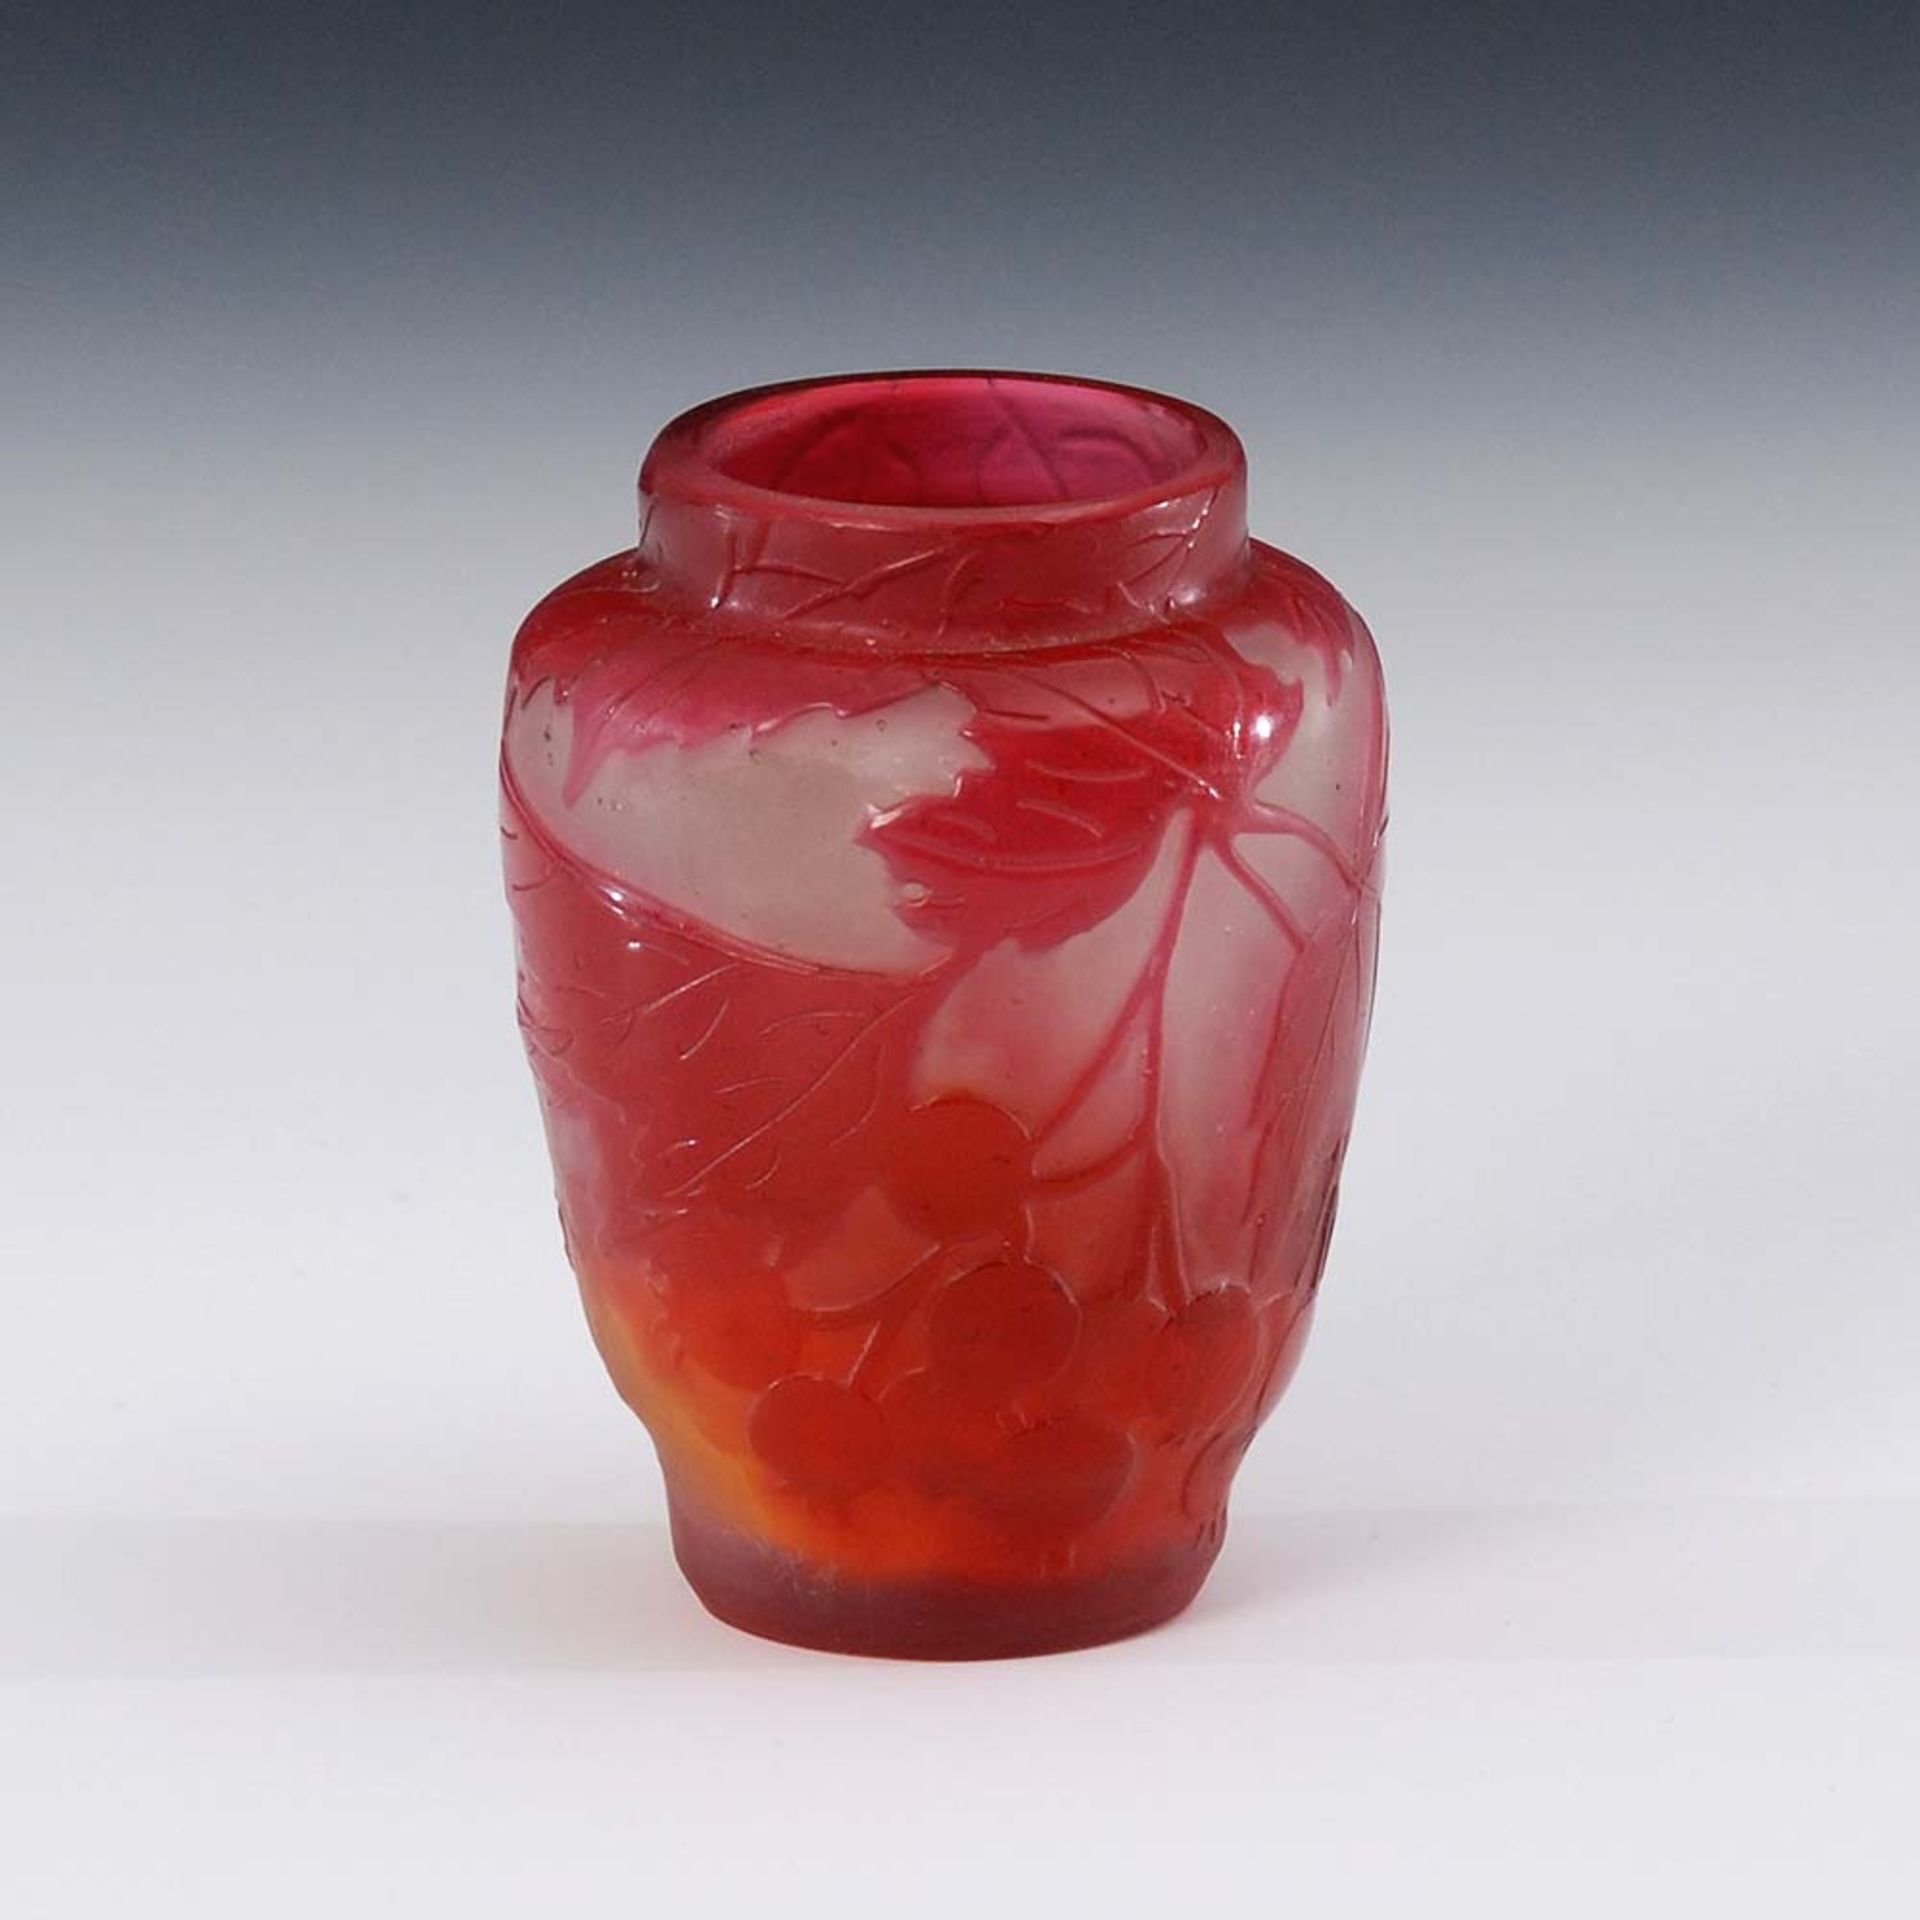 Kleine Vase mit Beerendekor, Gallé. Signiert, um 1904. Farbloses Glas mit orangefarbener